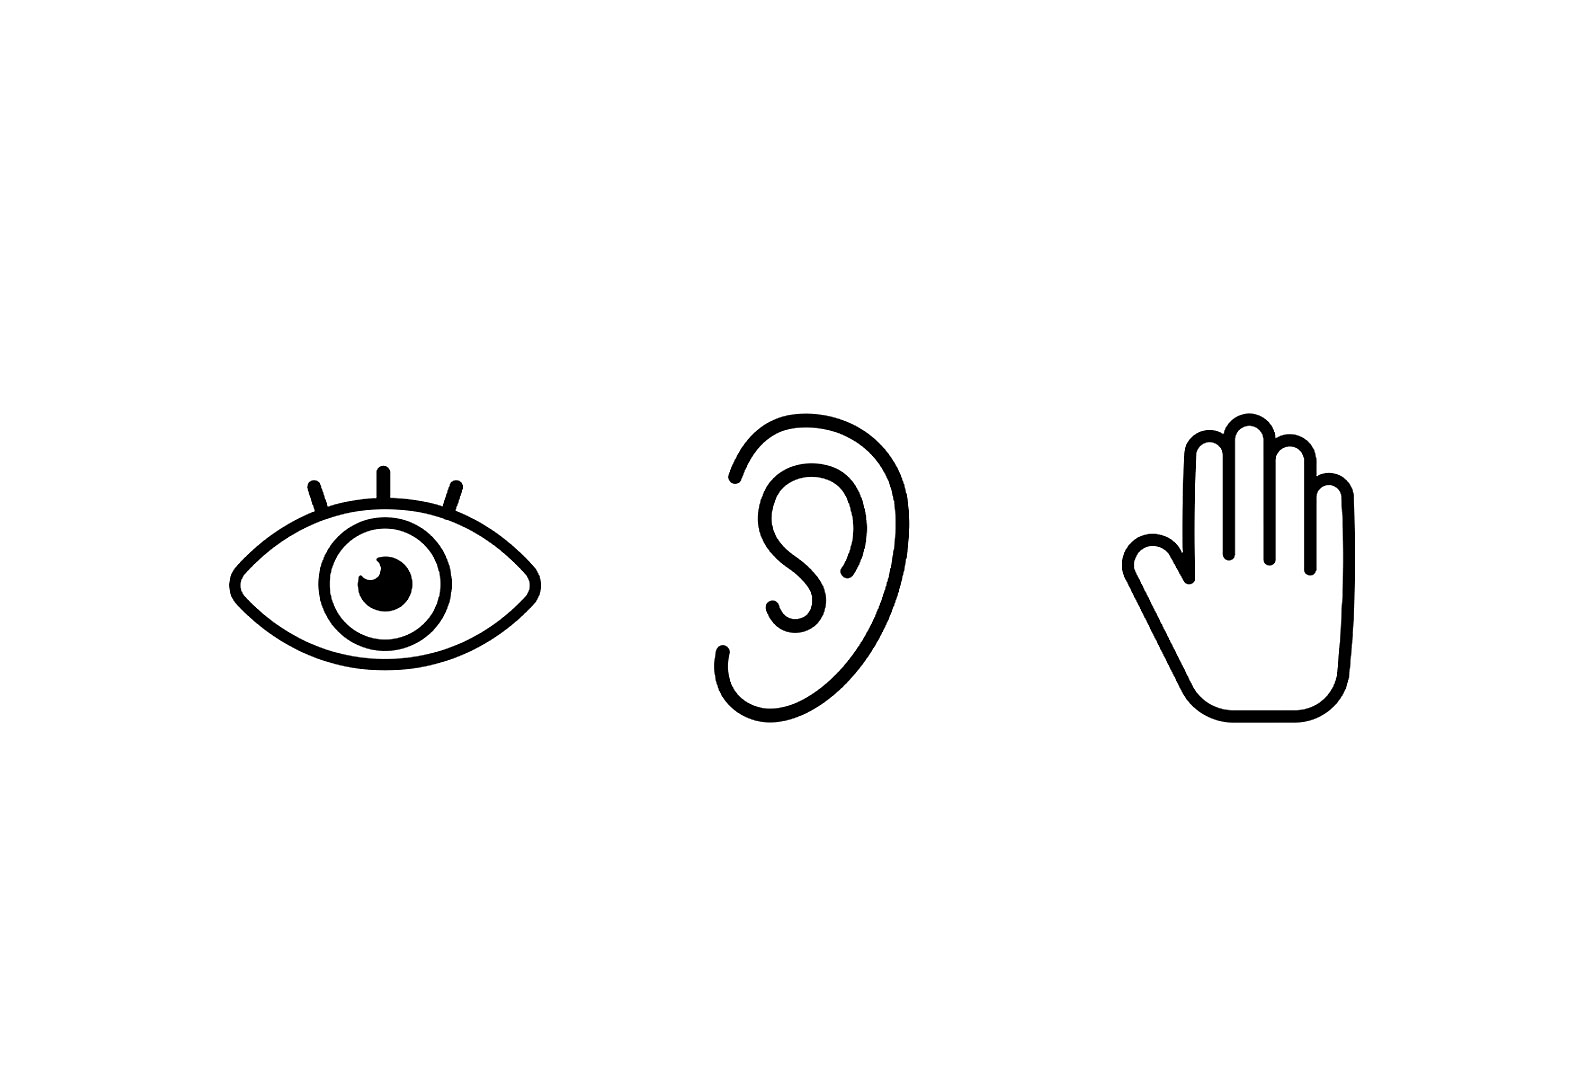 Tri ikone, druga poleg druge, na levi strani je oko, v sredini je uho, na sredini pa je roka